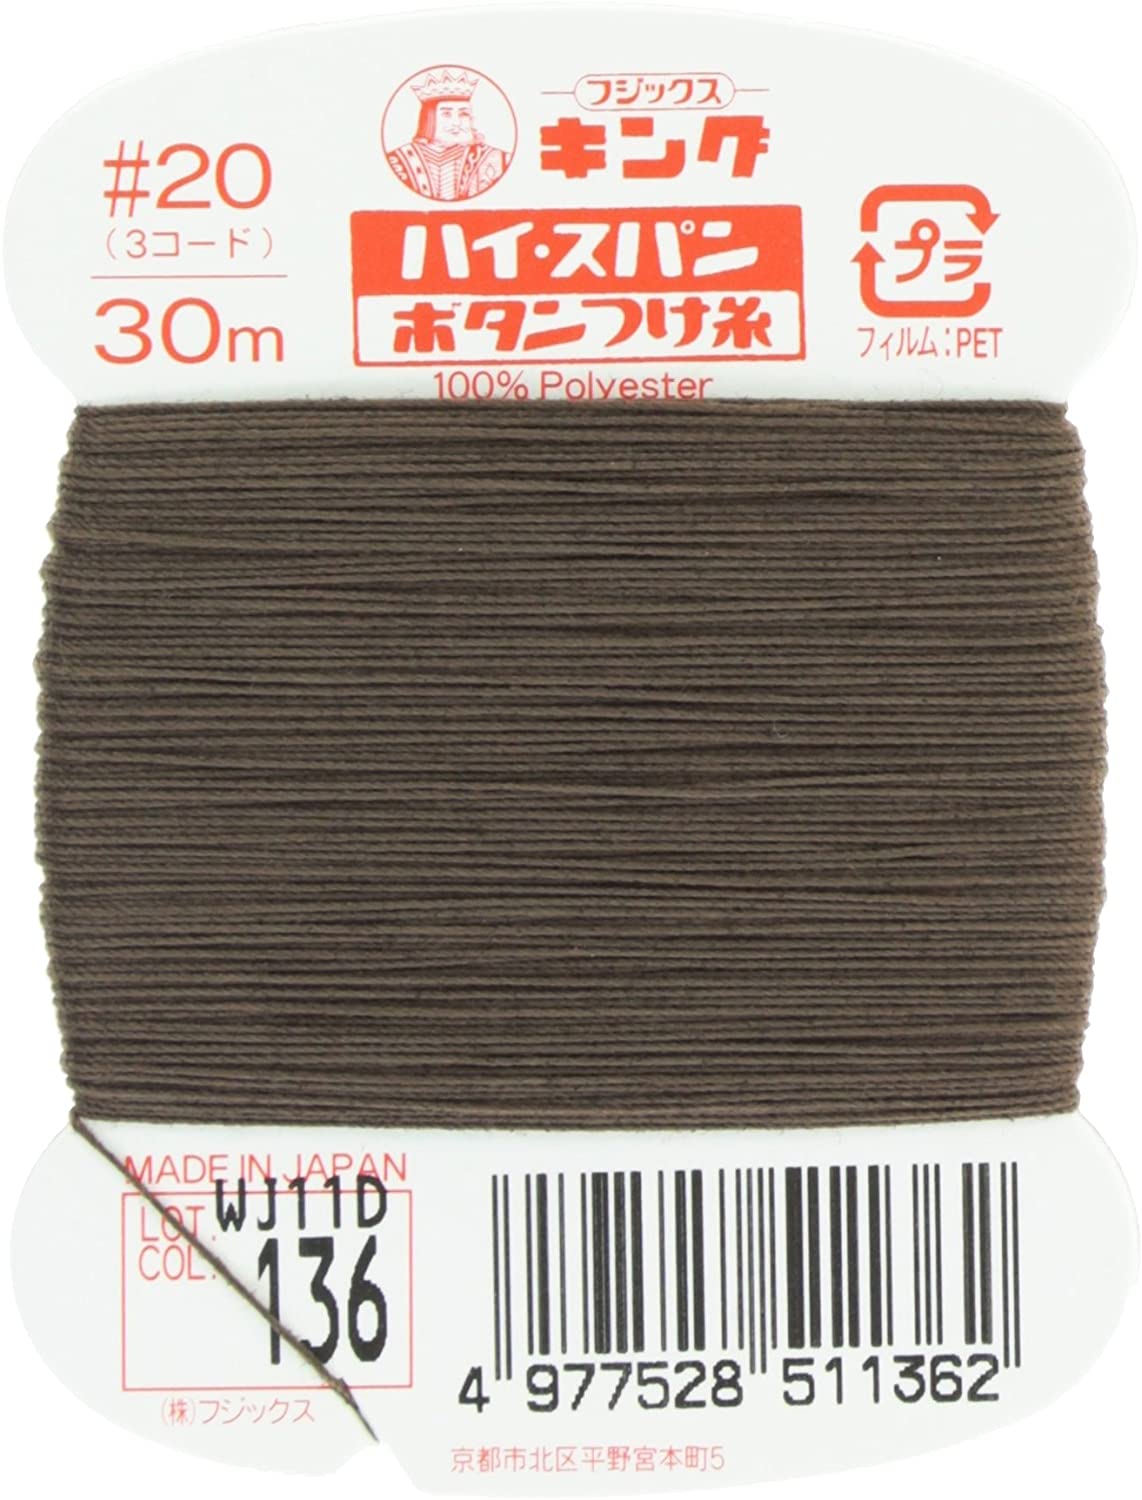 FK51-136 ハイスパンボタンつけ糸 #20 30m巻 (枚)